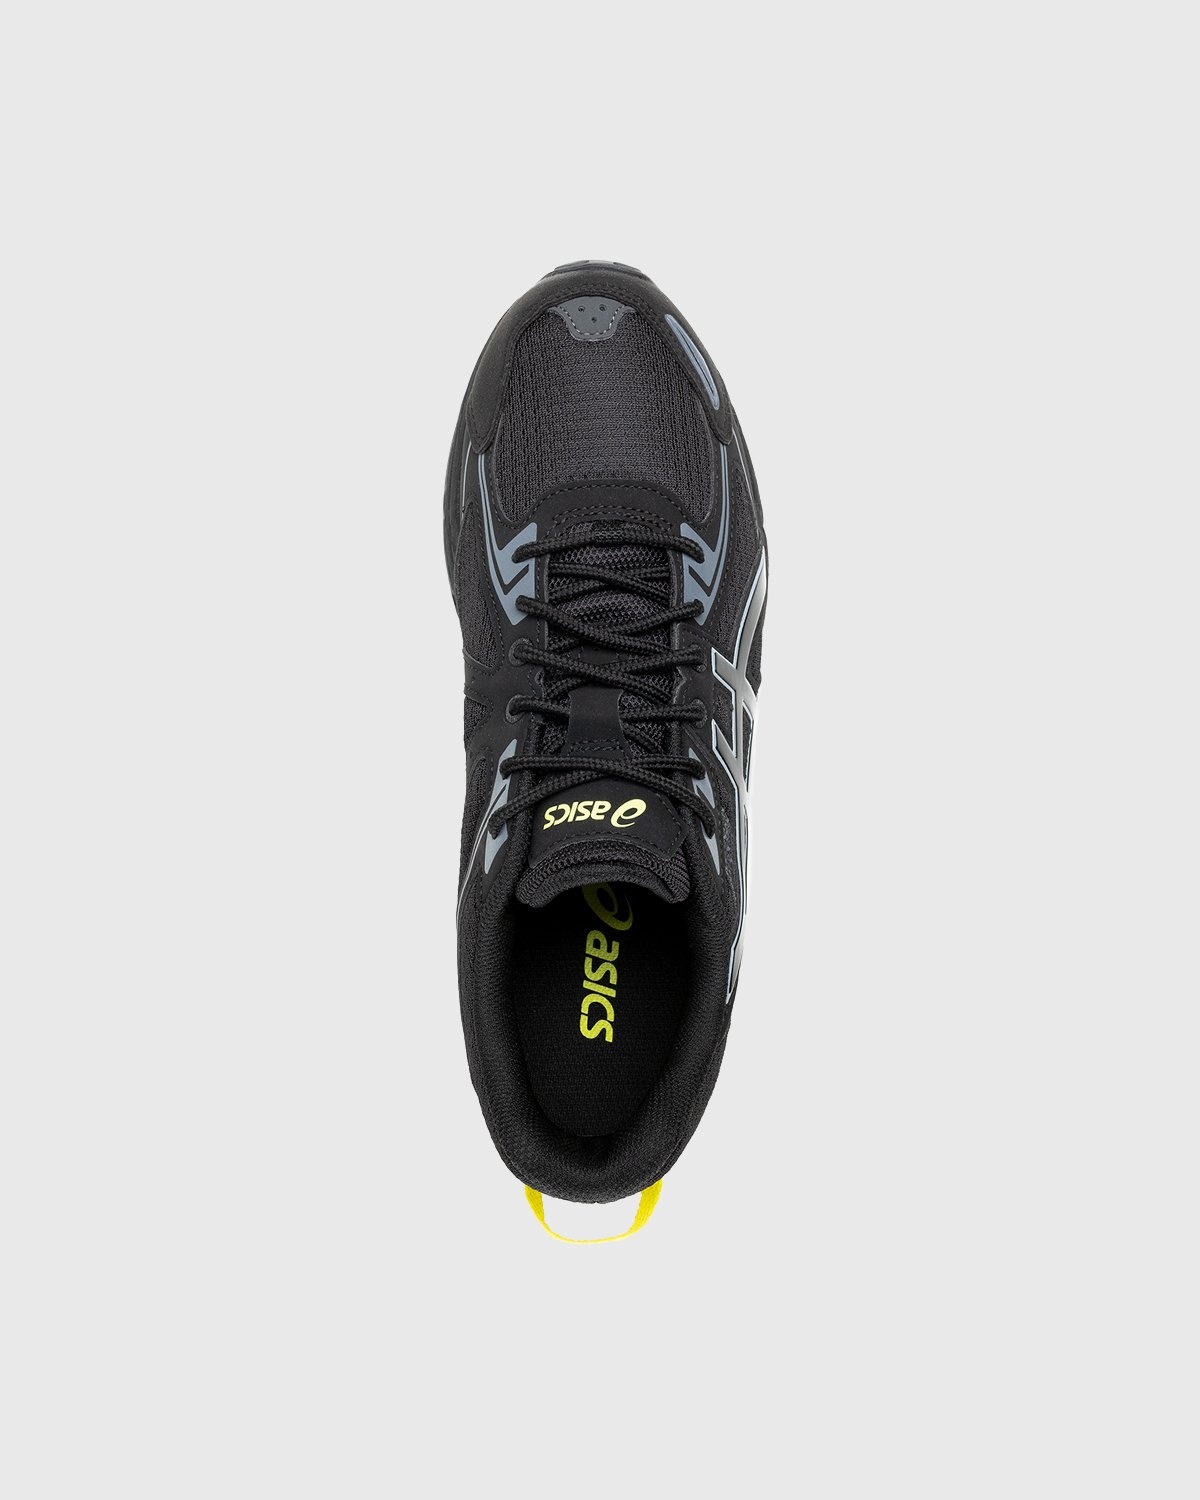 asics – Gel-Venture 6 Black/Black - Sneakers - Black - Image 5